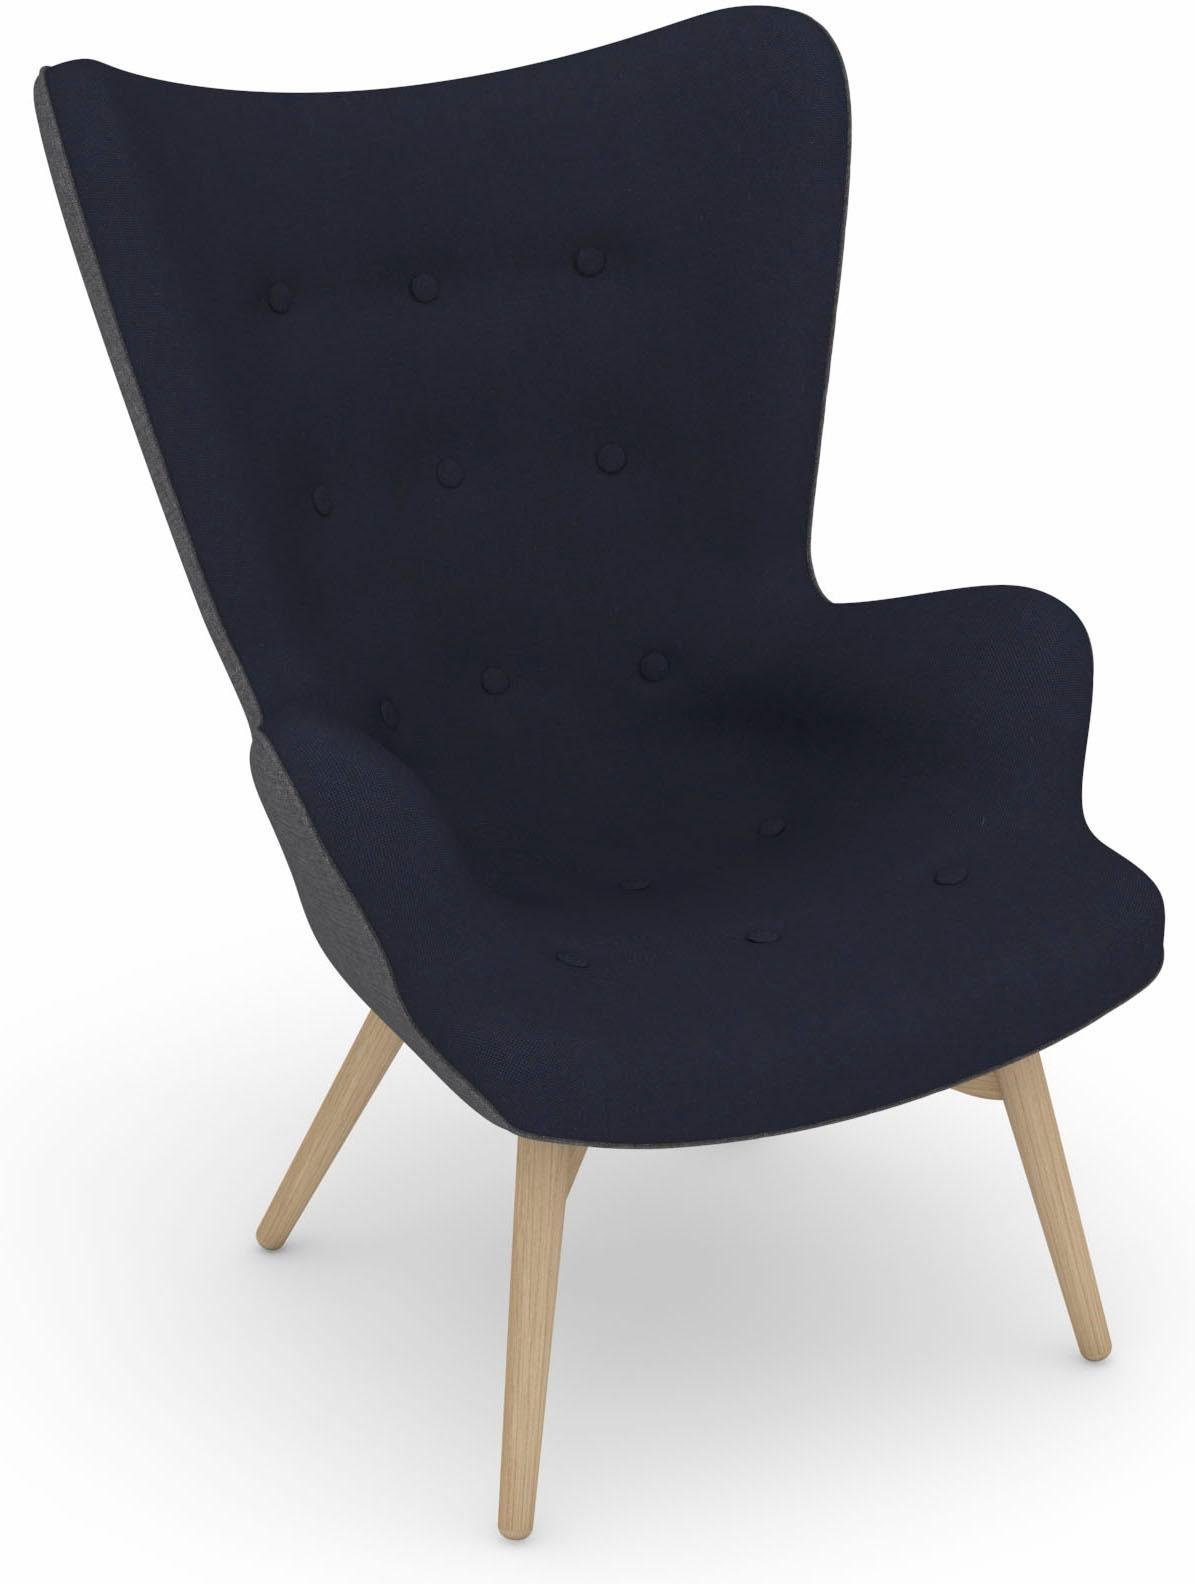 Max Winzer® Fauteuil Build-a-chair Arne in retro-look, om zelf te stylen, stoel met een hoge rugleuning